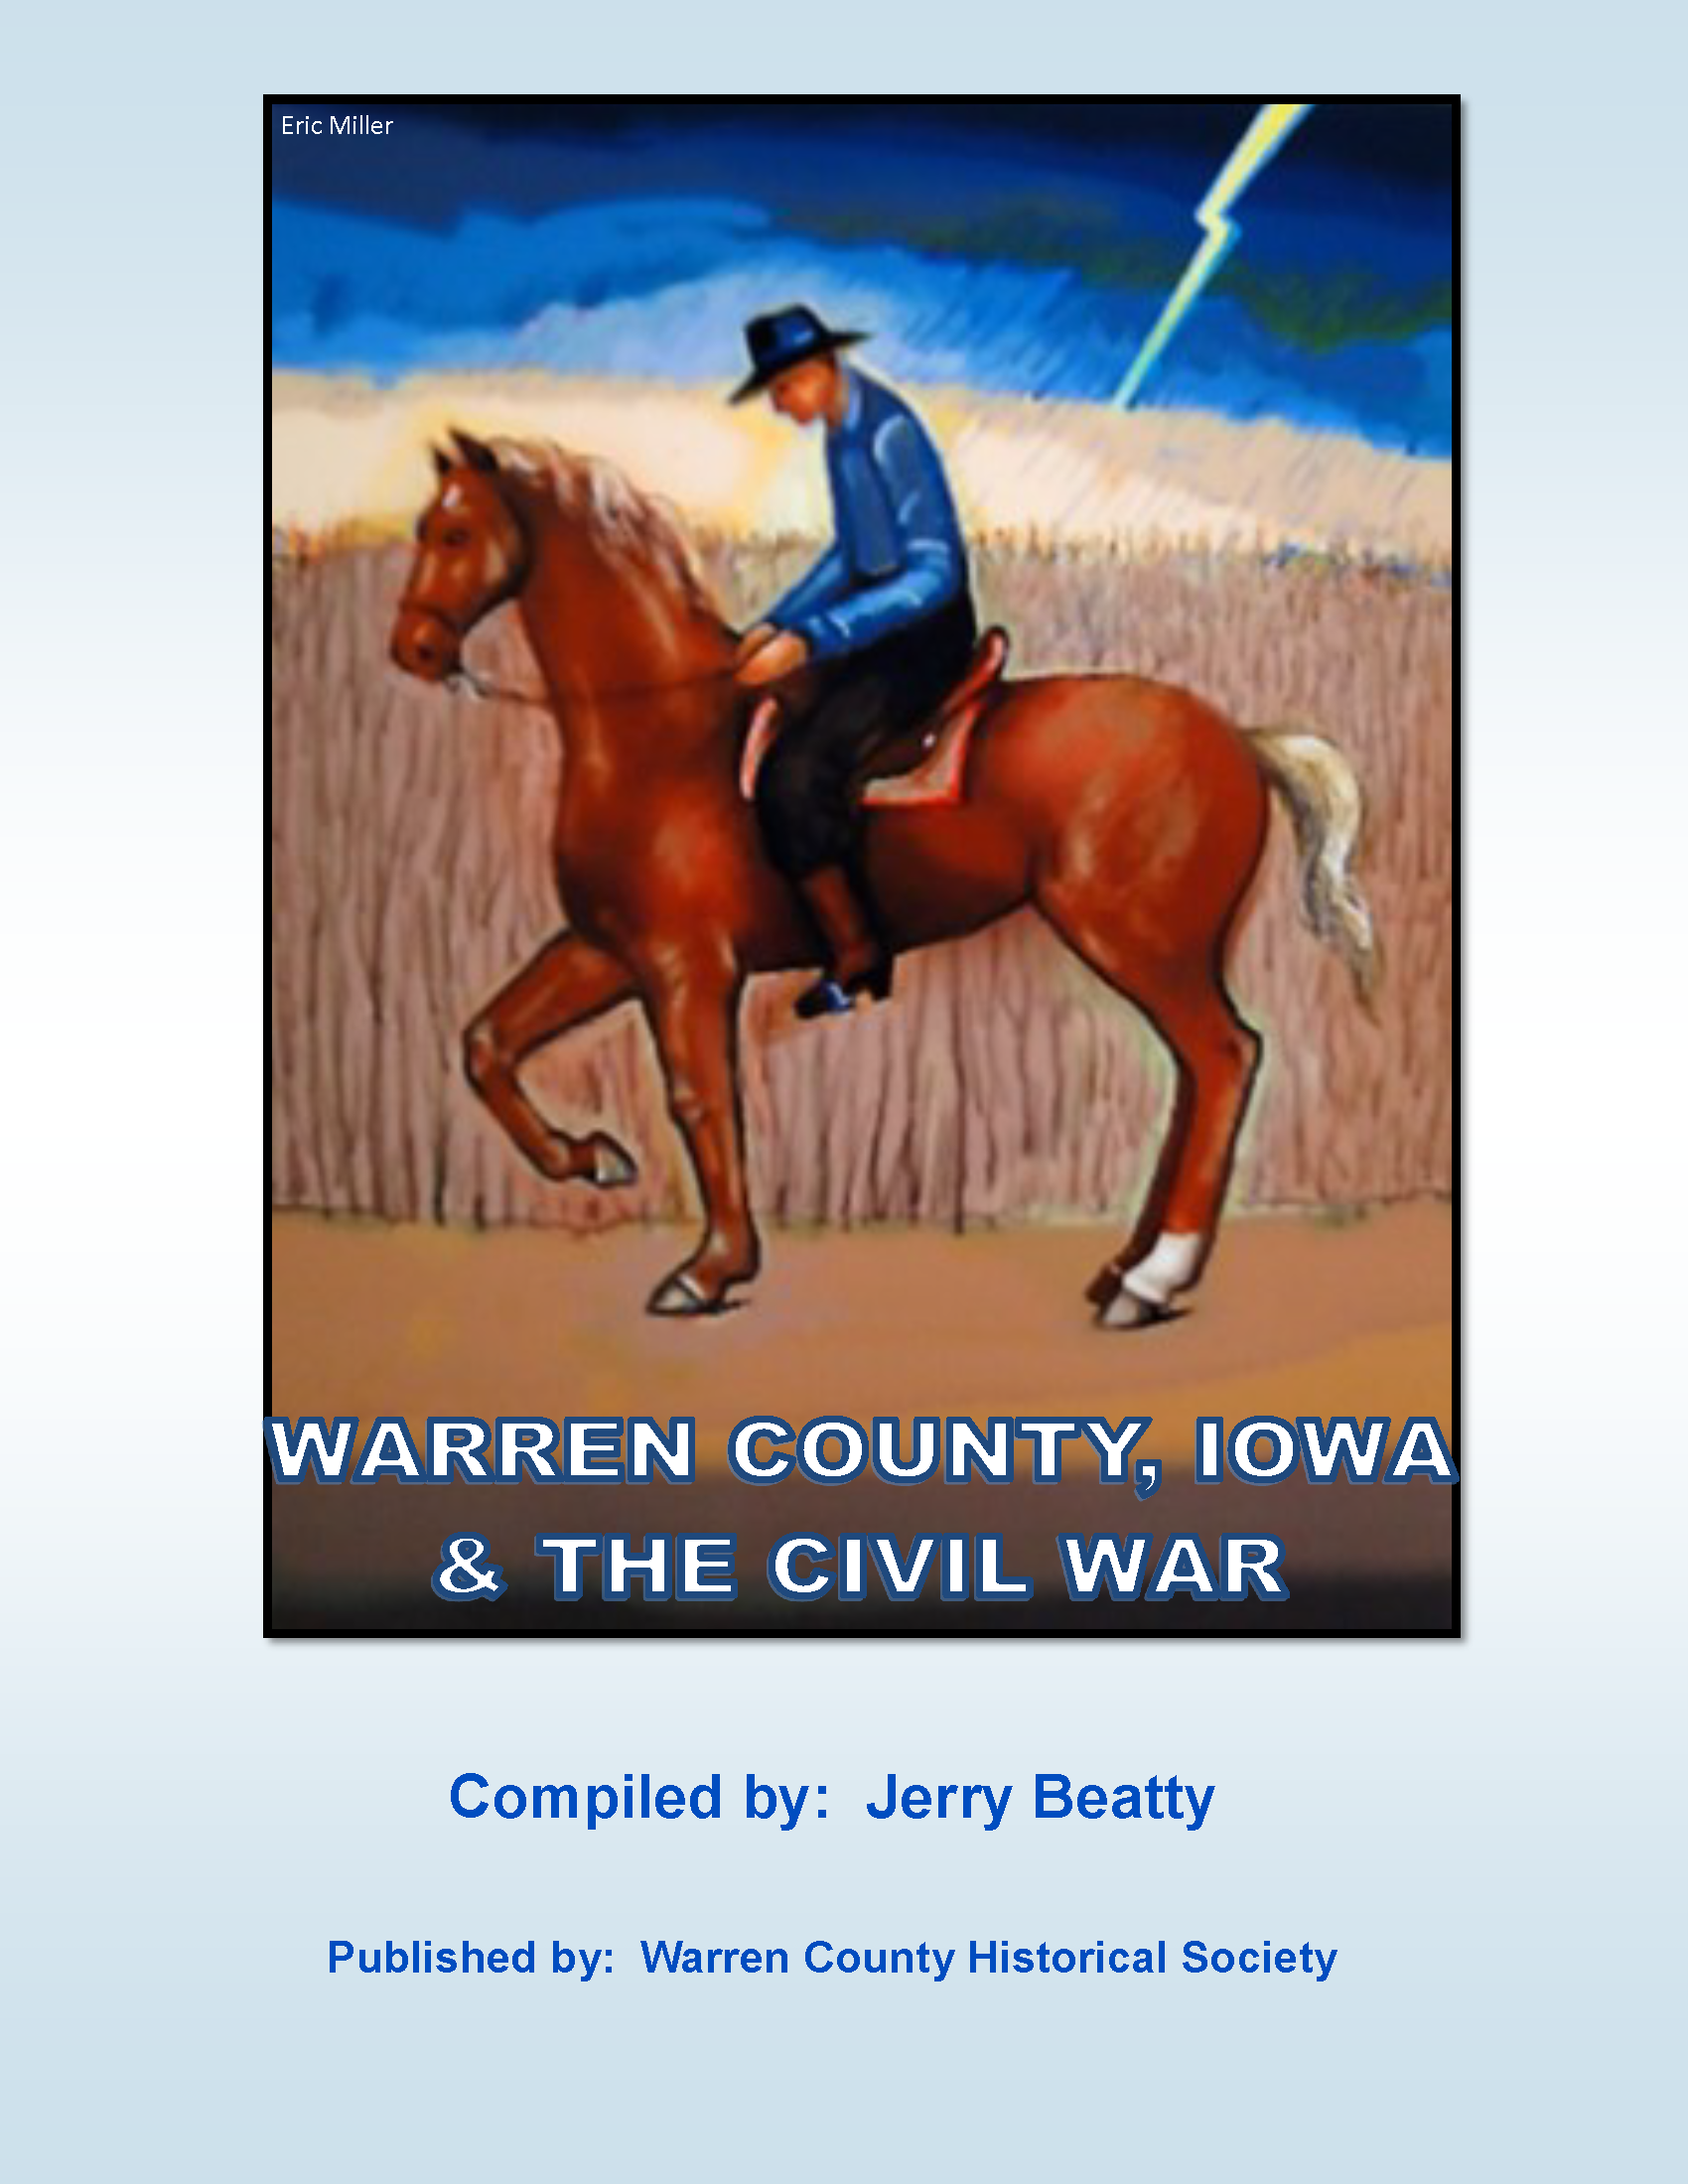 Civil War Book Cover